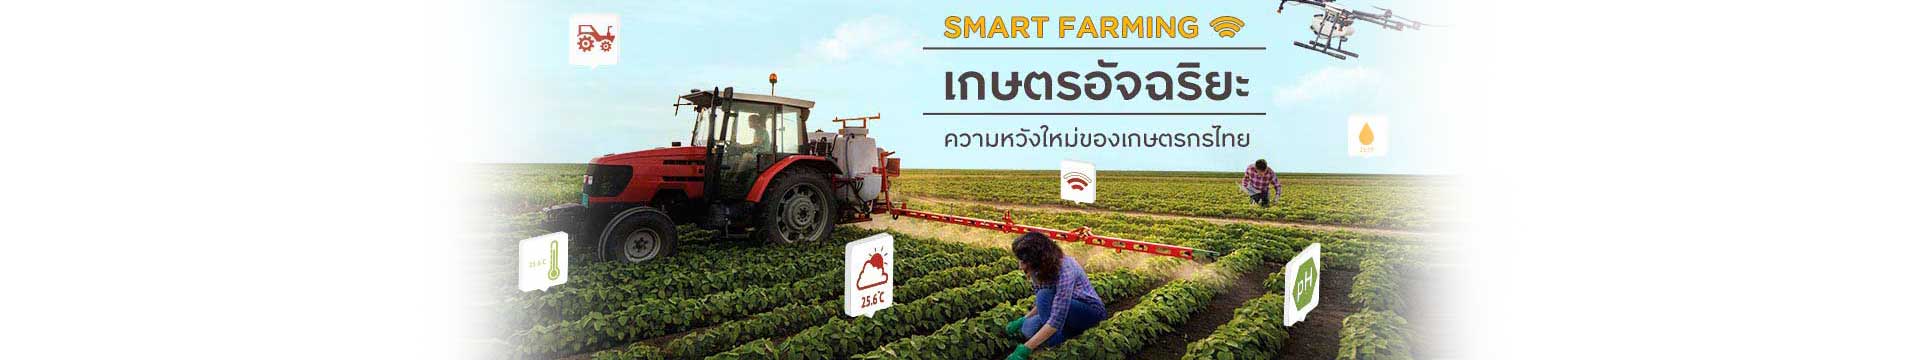 Smart Farming เกษตรอัจฉริยะ ความหวังใหม่ของเกษตรกรไทย